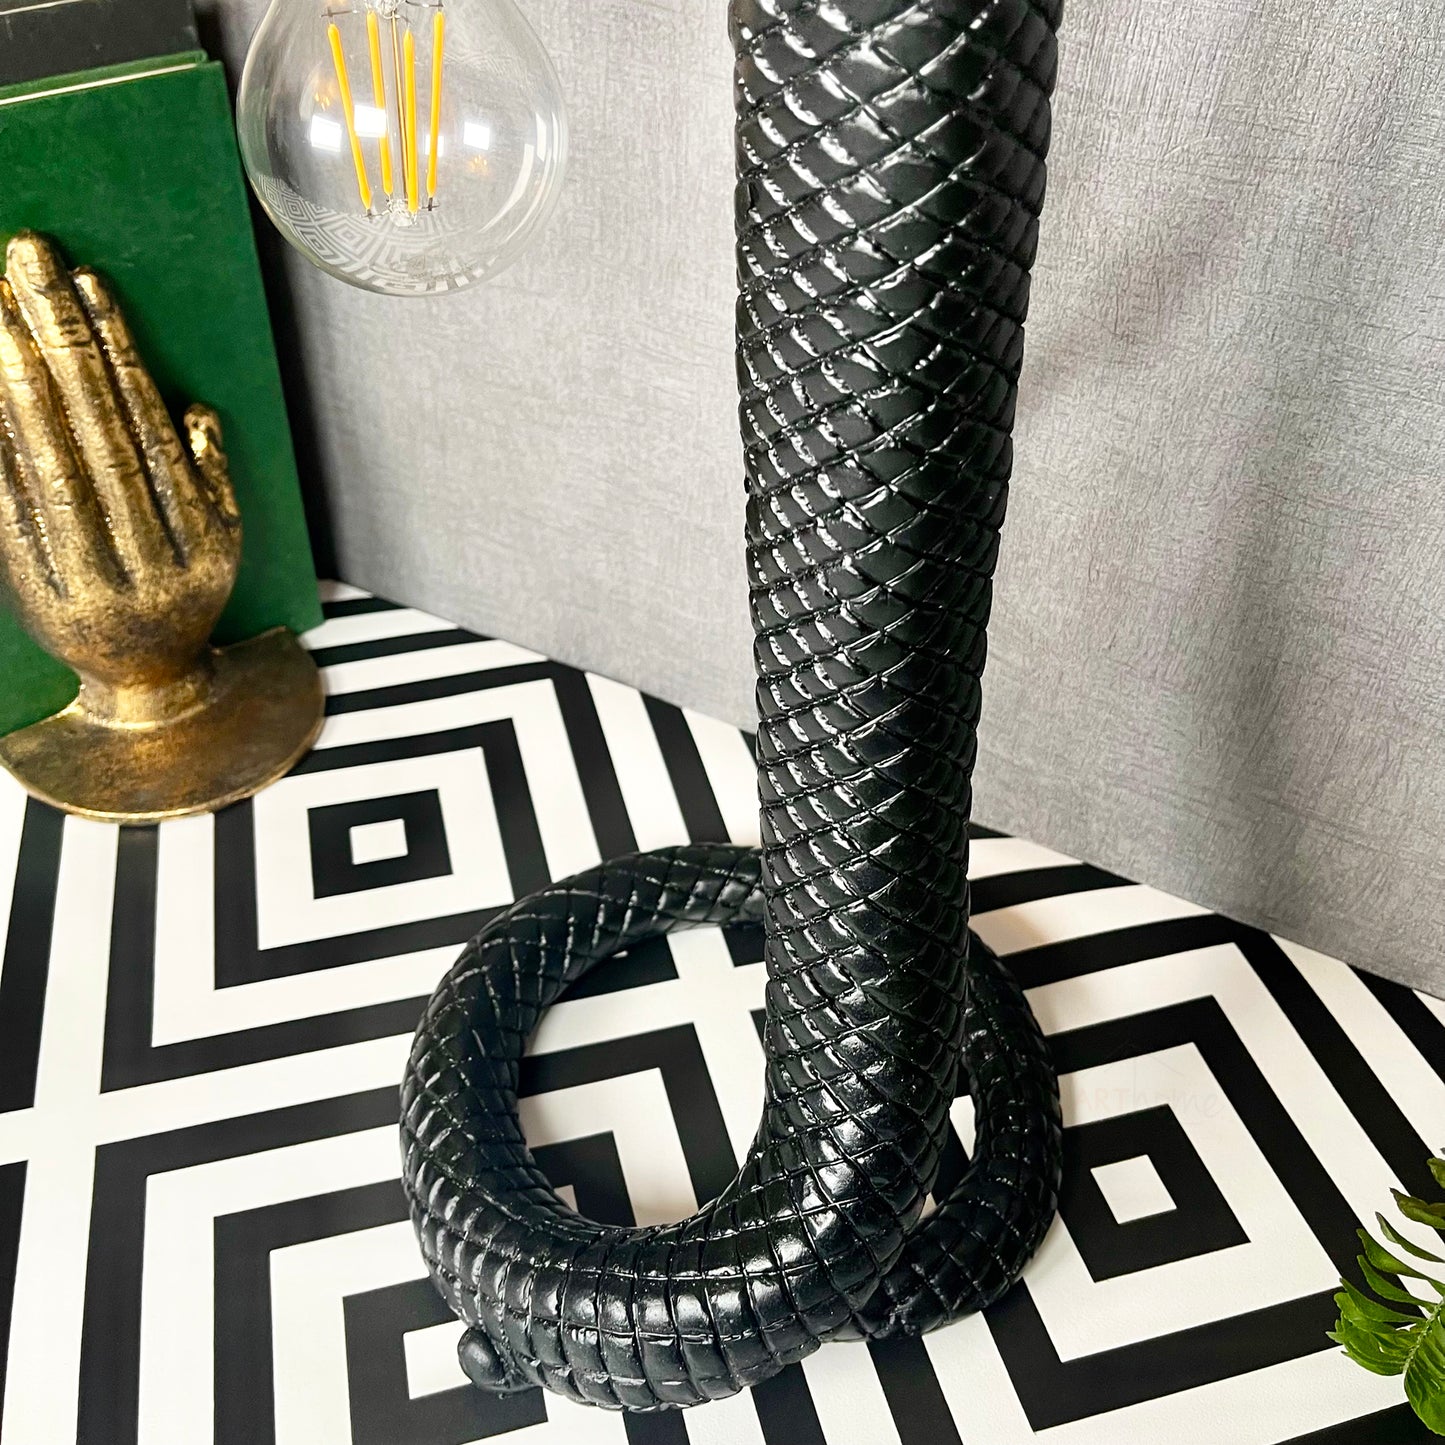 Black King Cobra Snake Lamp